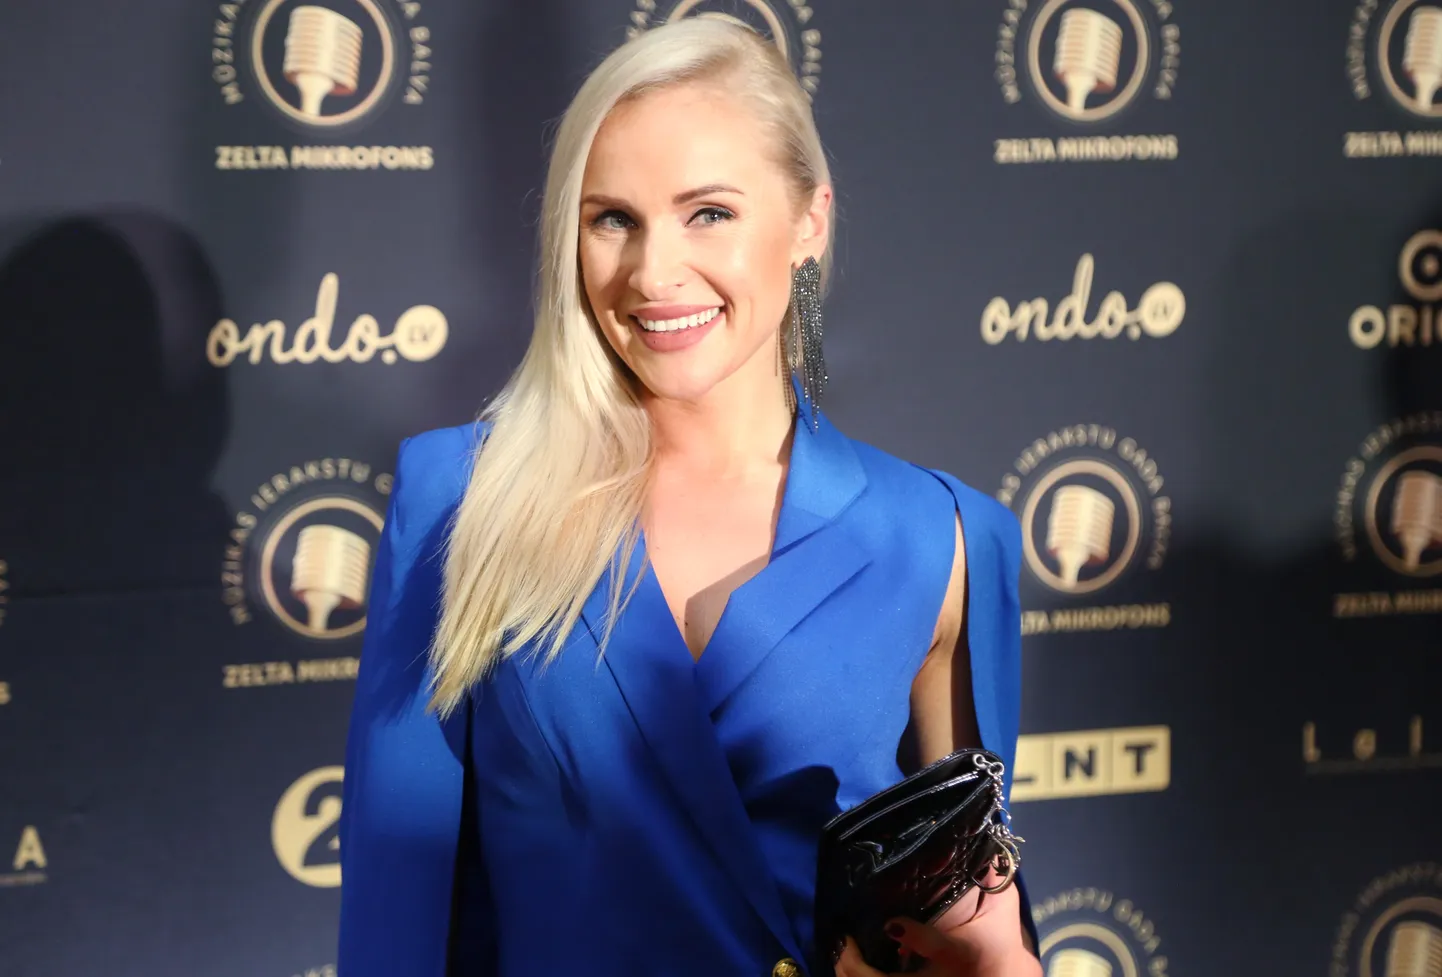 Radio personība Maija Rozīte-Krištopane piedalās mūzikas ierakstu gada balvas "Zelta mikrofons" svinīgajā balvu pasniegšanas ceremonijā Dailes teātrī.